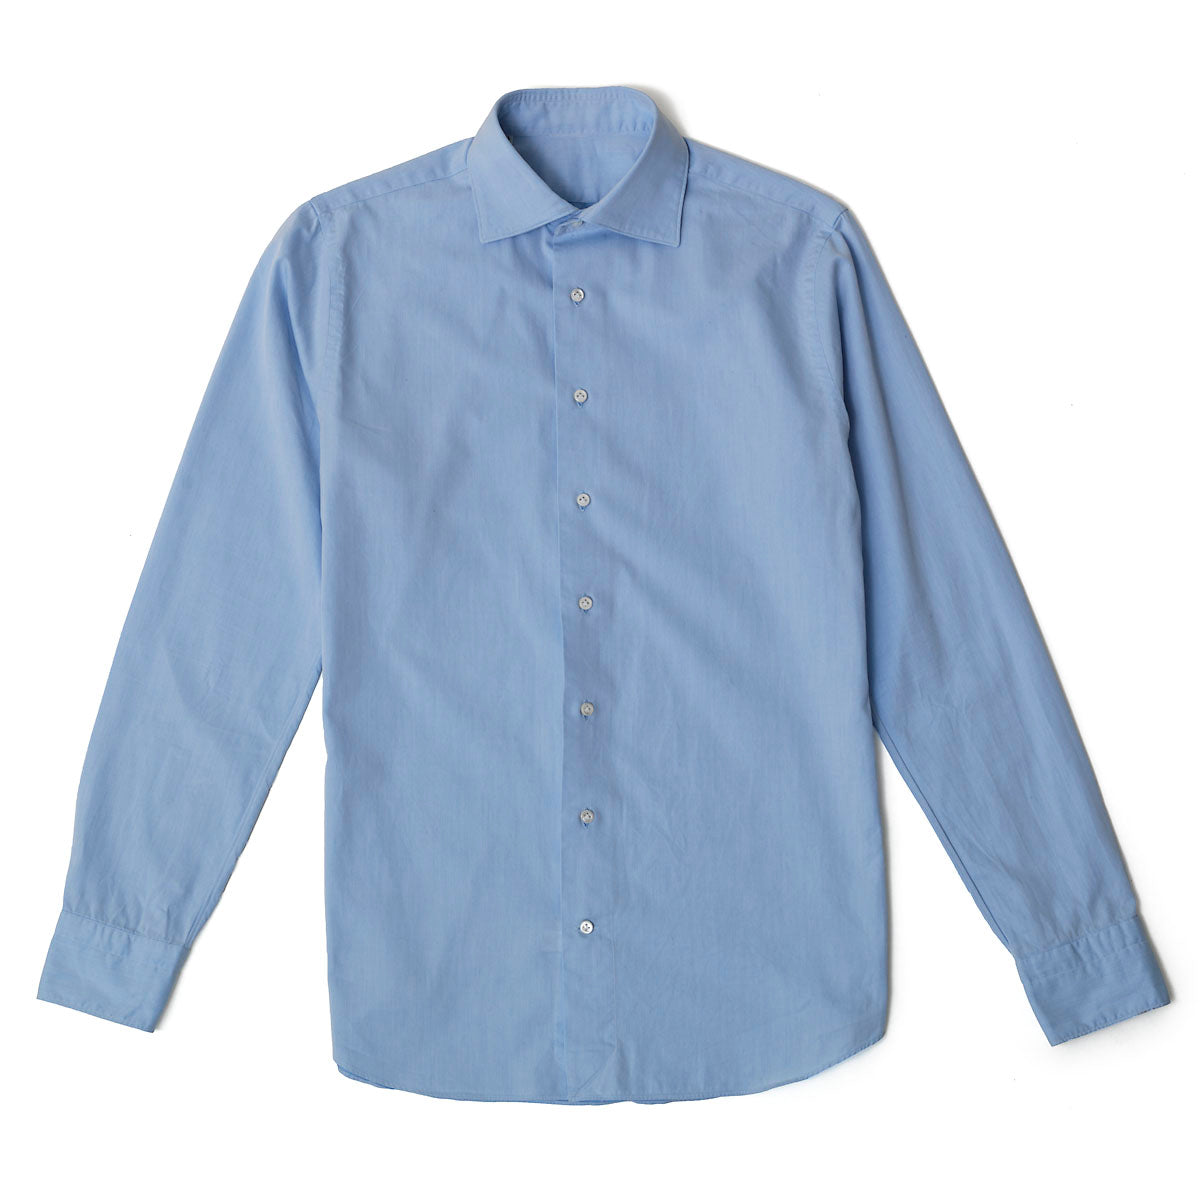 Light blue lightweight oxford shirt